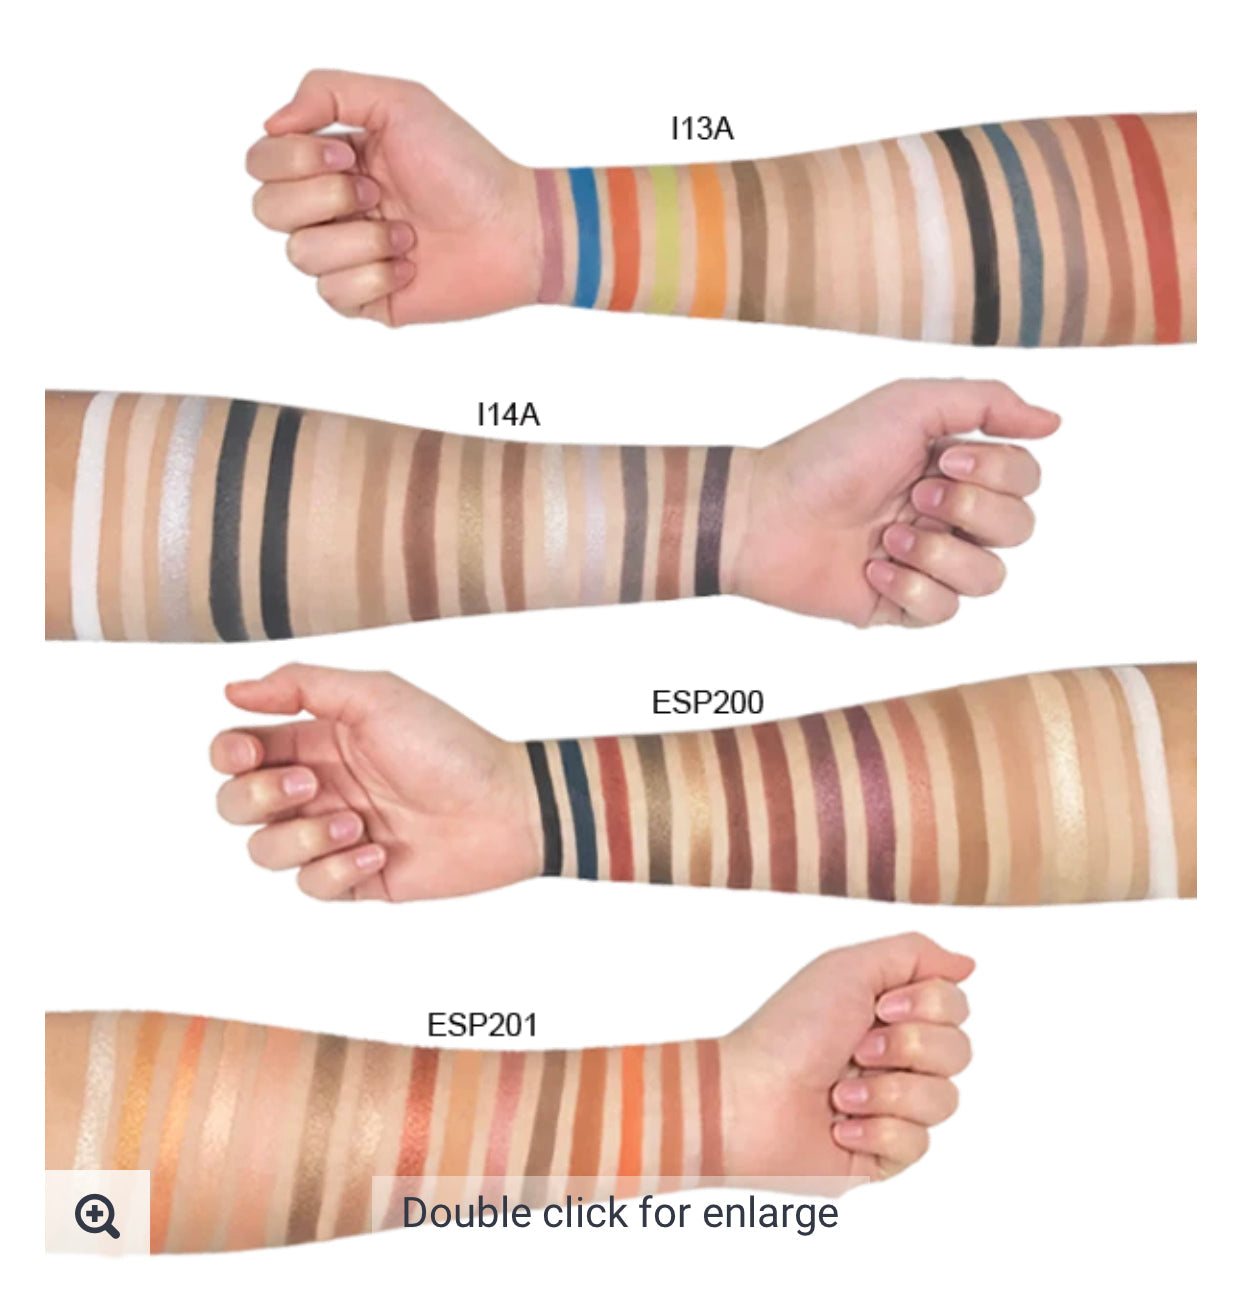 15 Shade Eyeshadow Palette I14A